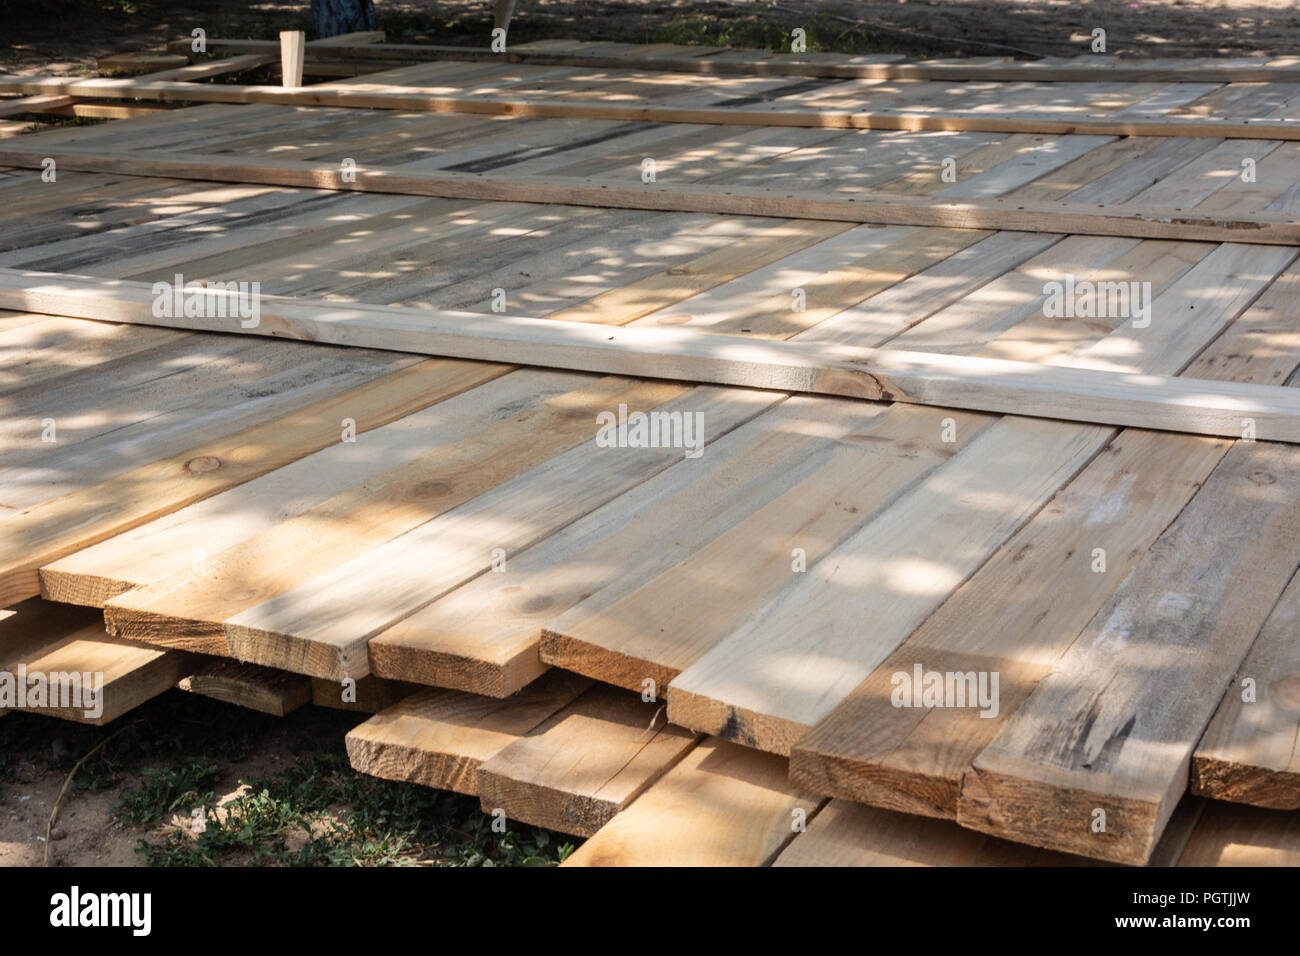 Holzschalung betonstreifen Grundlage für A-Frame art house Stockfoto